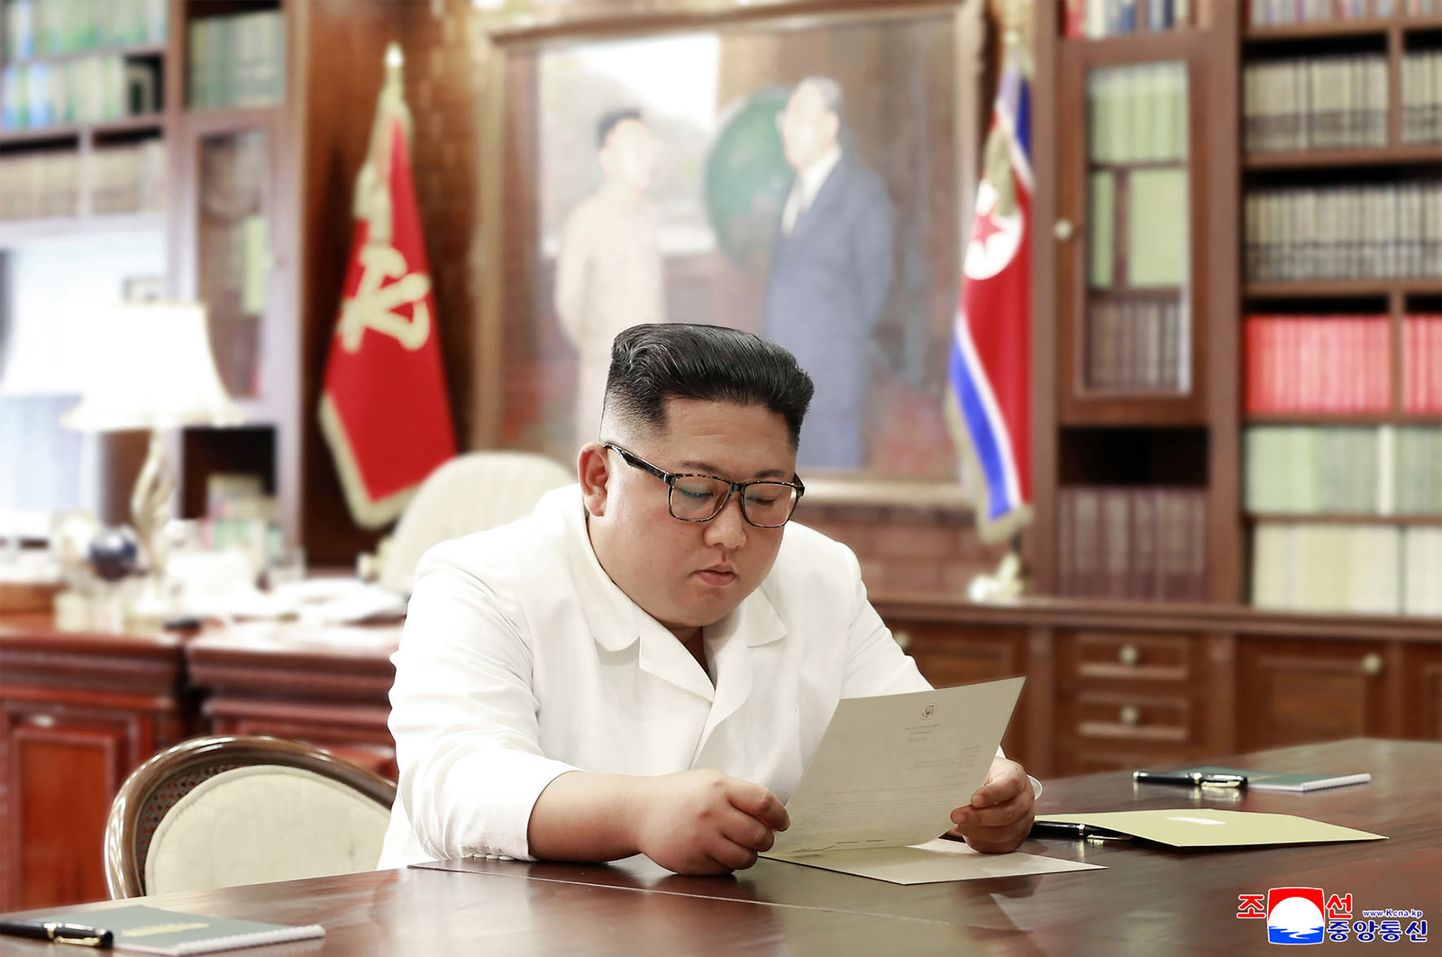 Ziemeļkorejas līderis Kims Čenuns